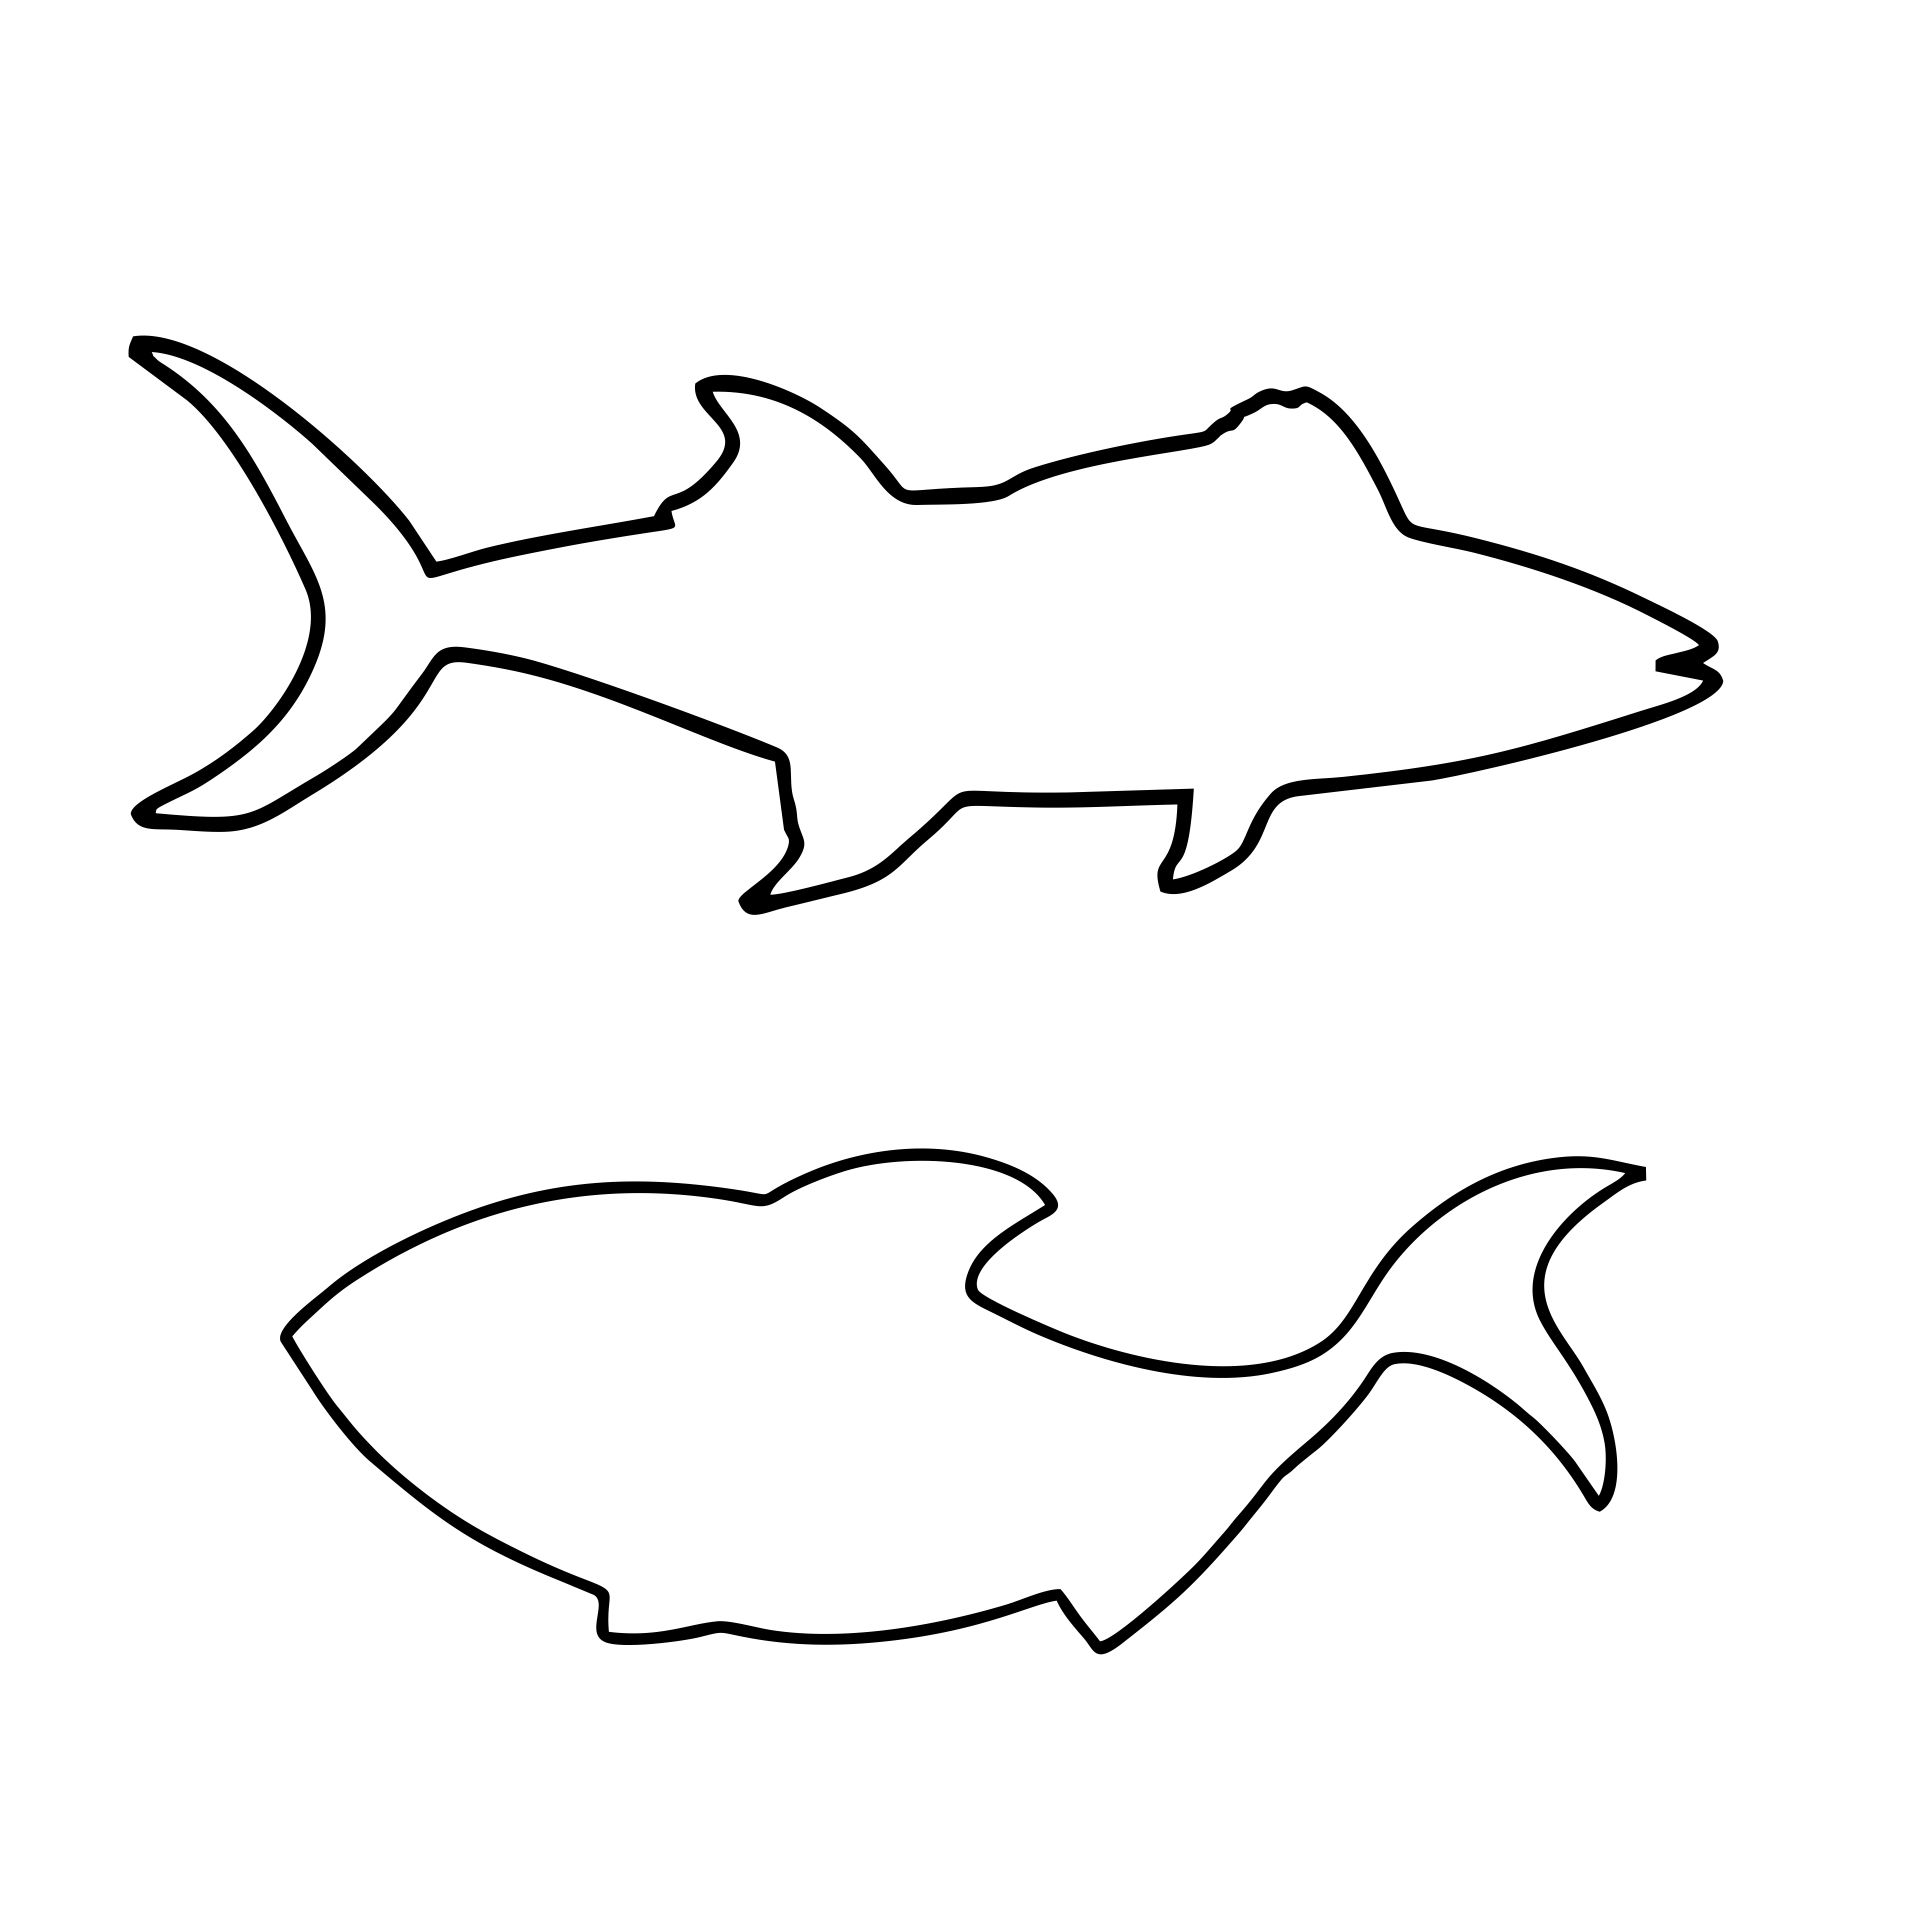 Printable Fish Template